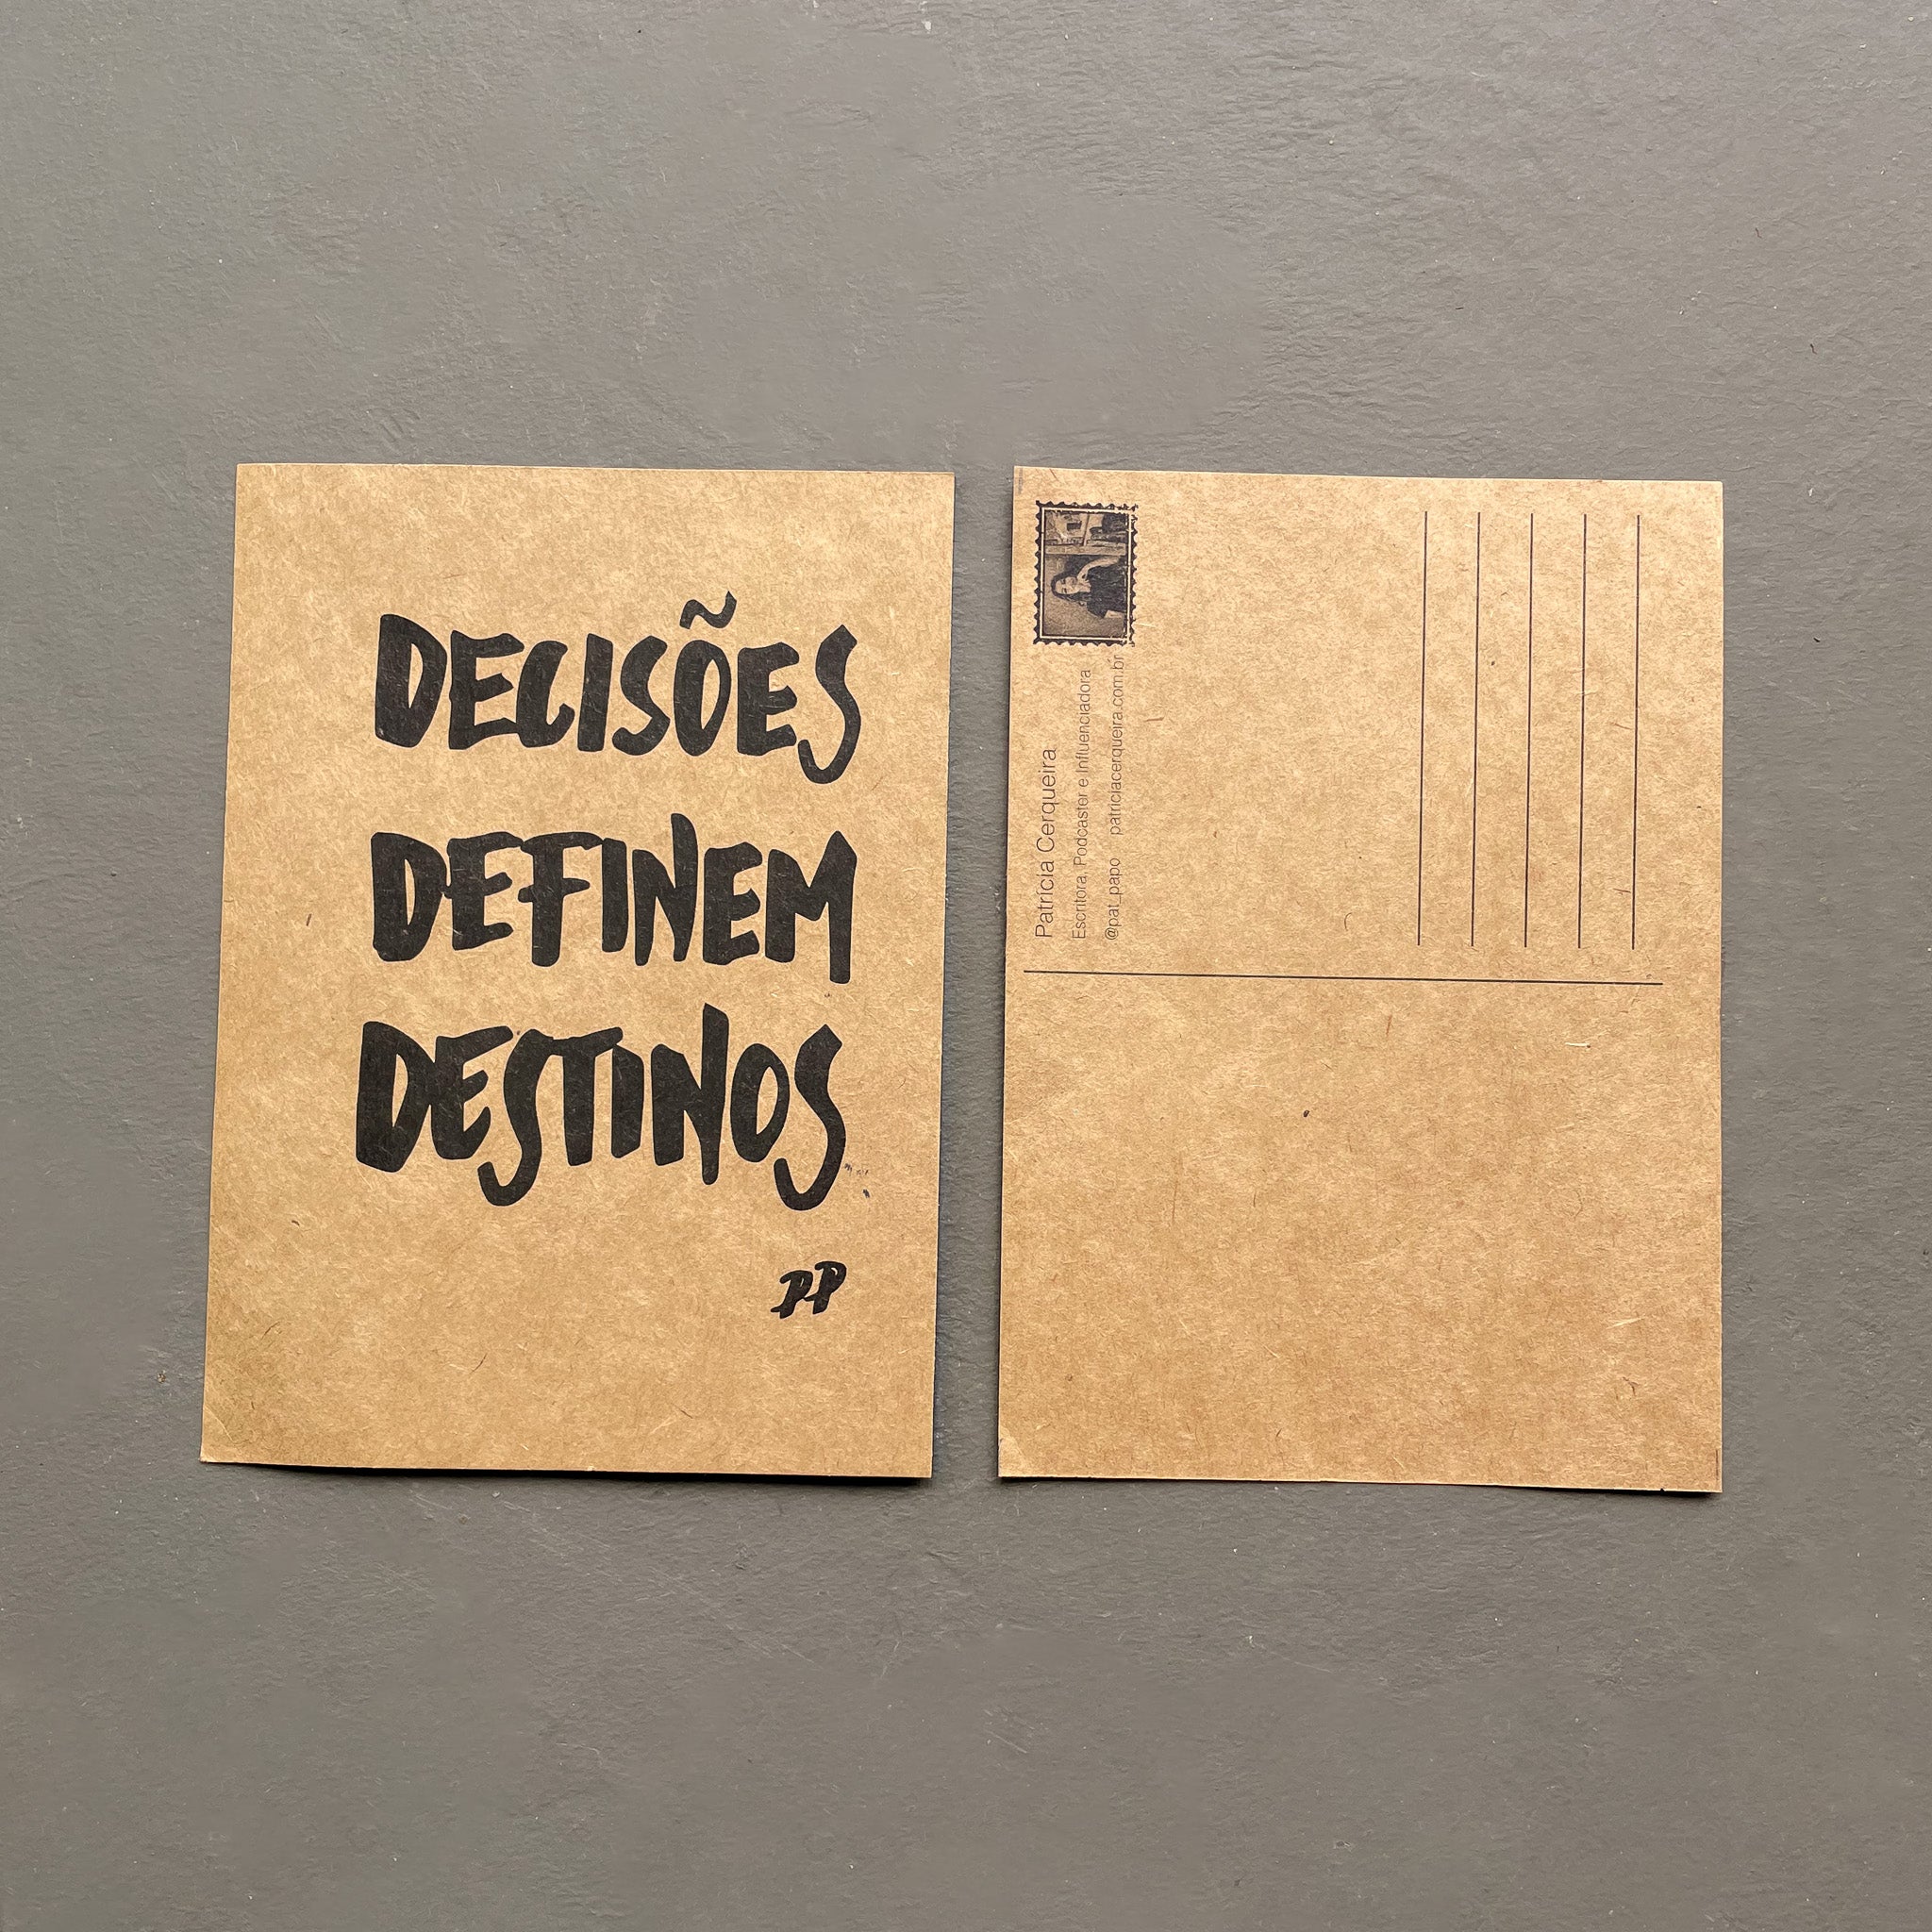 Cartão Postal: Decisões definem destinos